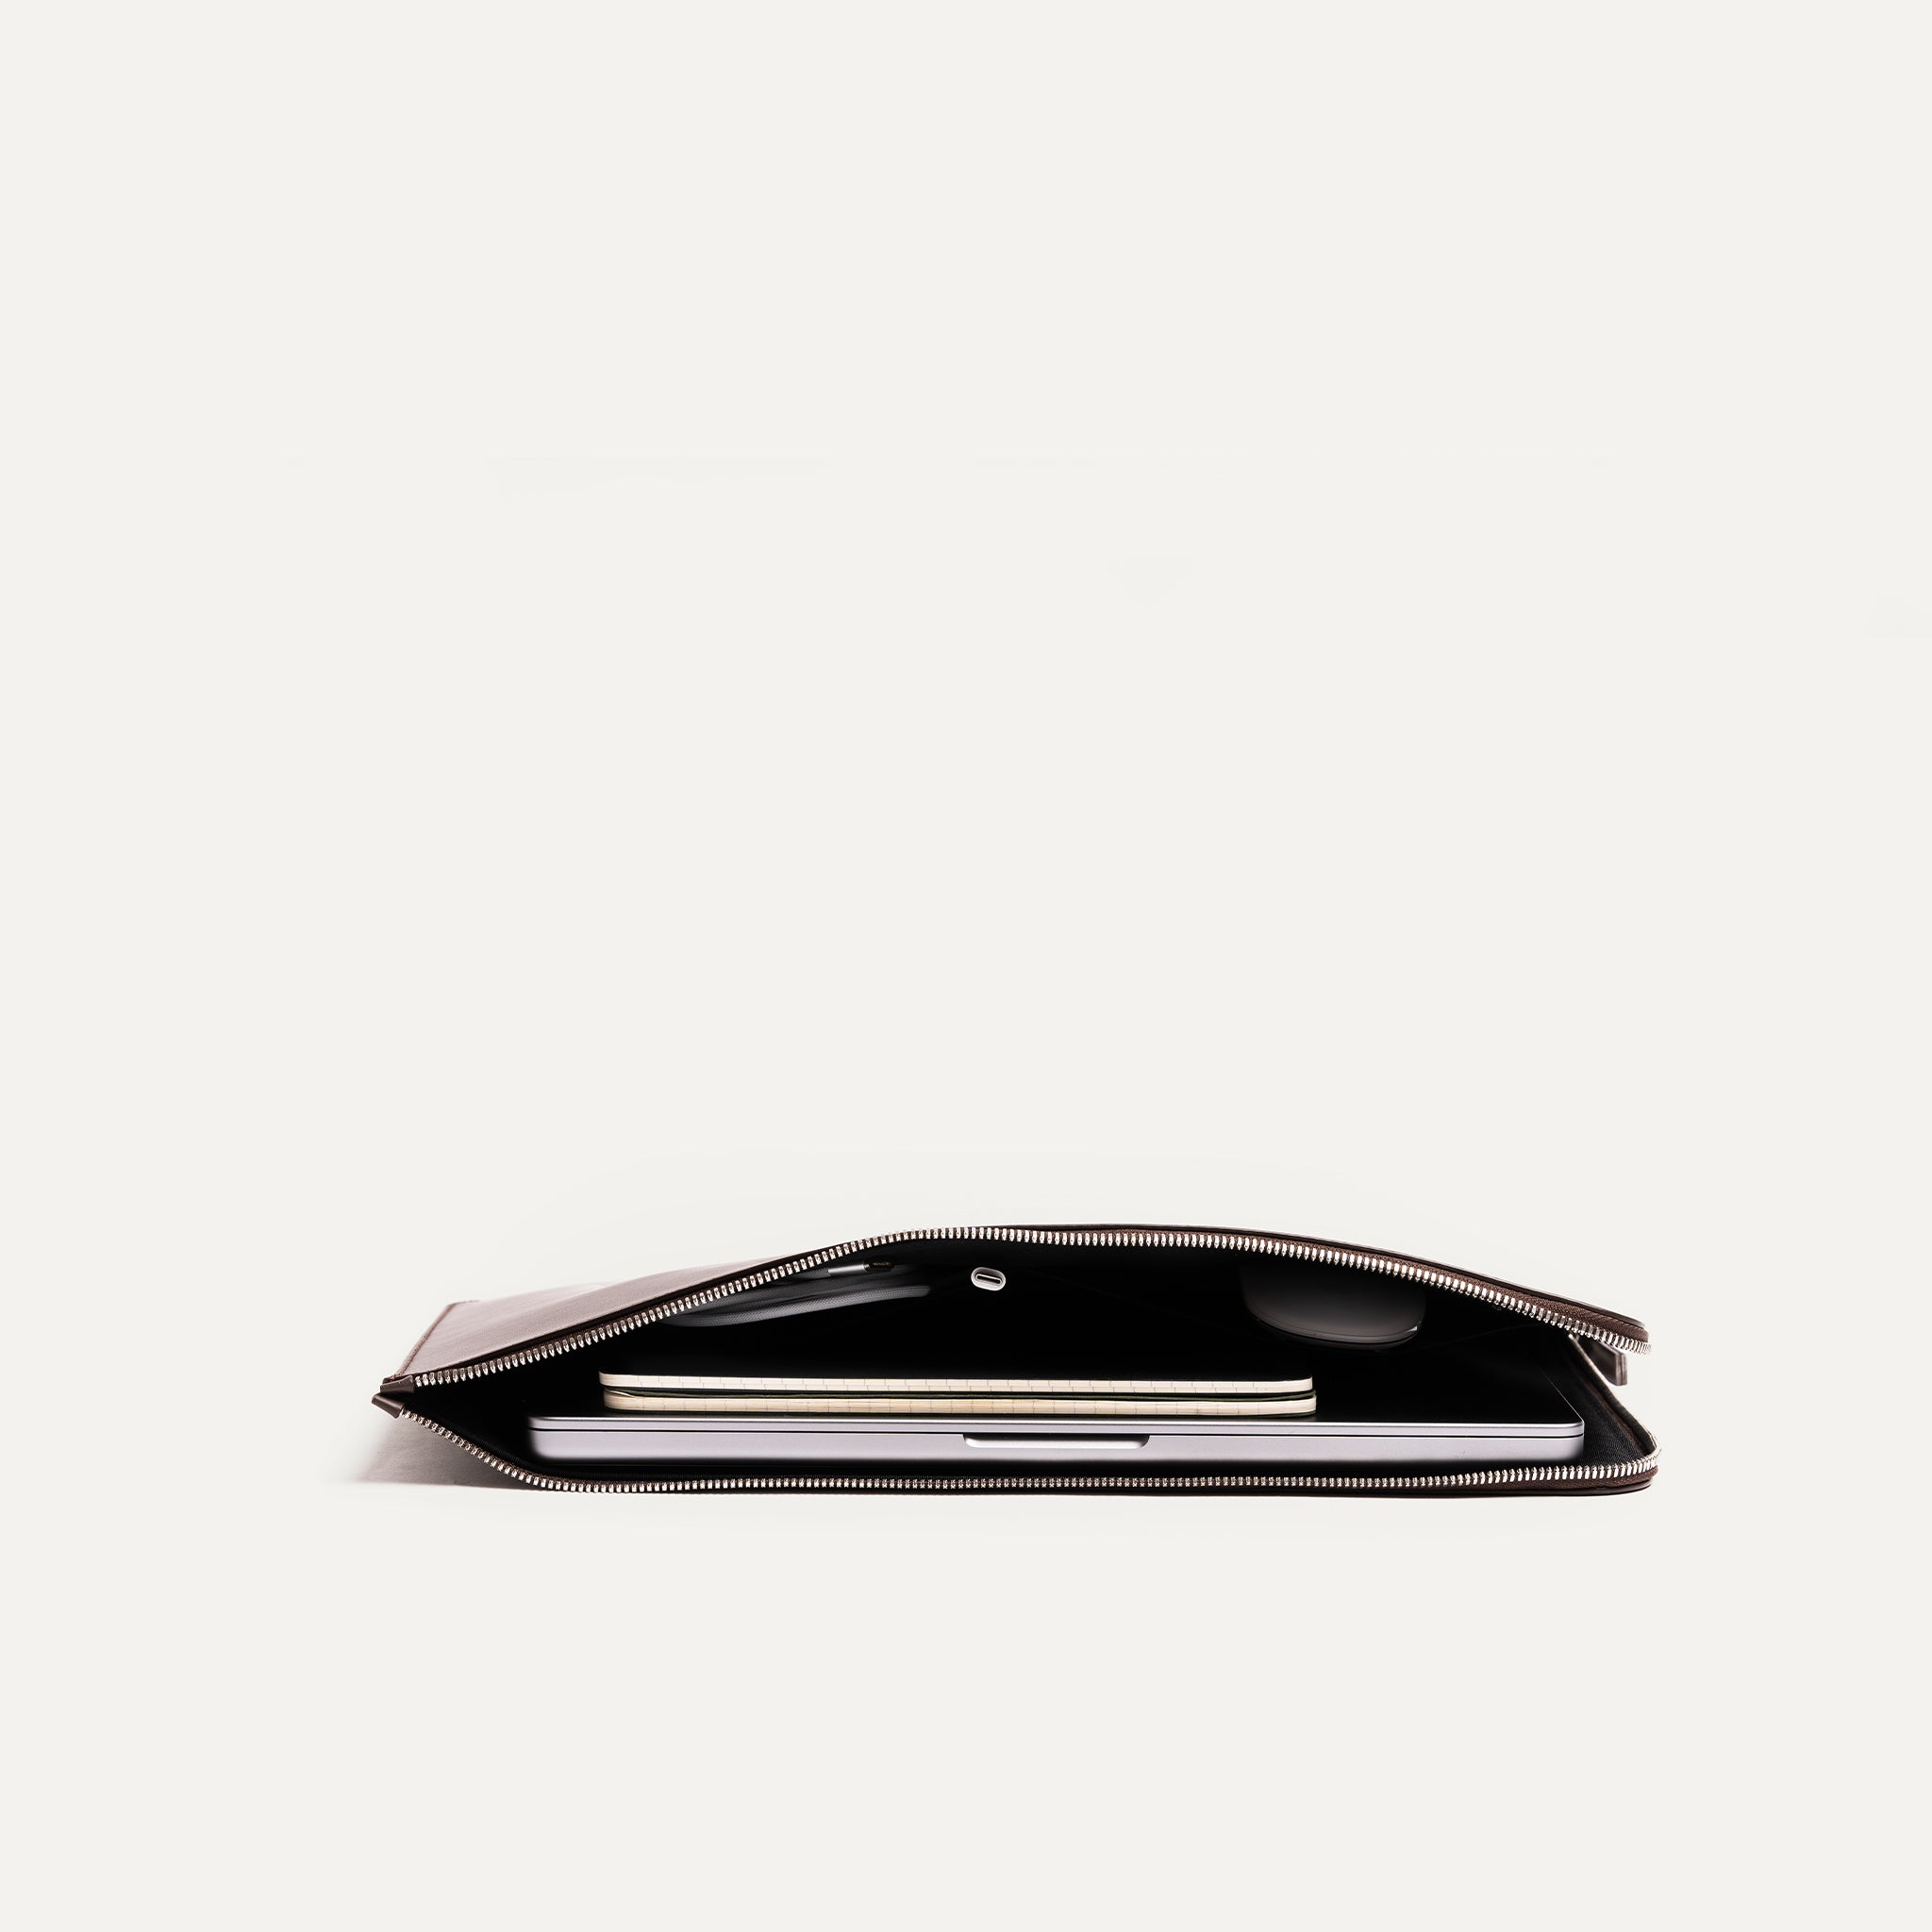 Cette pochette en cuir marron offre une protection fonctionnelle pour votre ordinateur portable. Son design compact et sa fermeture éclair supérieure en font un choix pratique. Elle possède également 2 poches à l'intérieur de la pochette pour transporter des accessoires en plus comme une souris d'ordinateur ou un chargeur. 